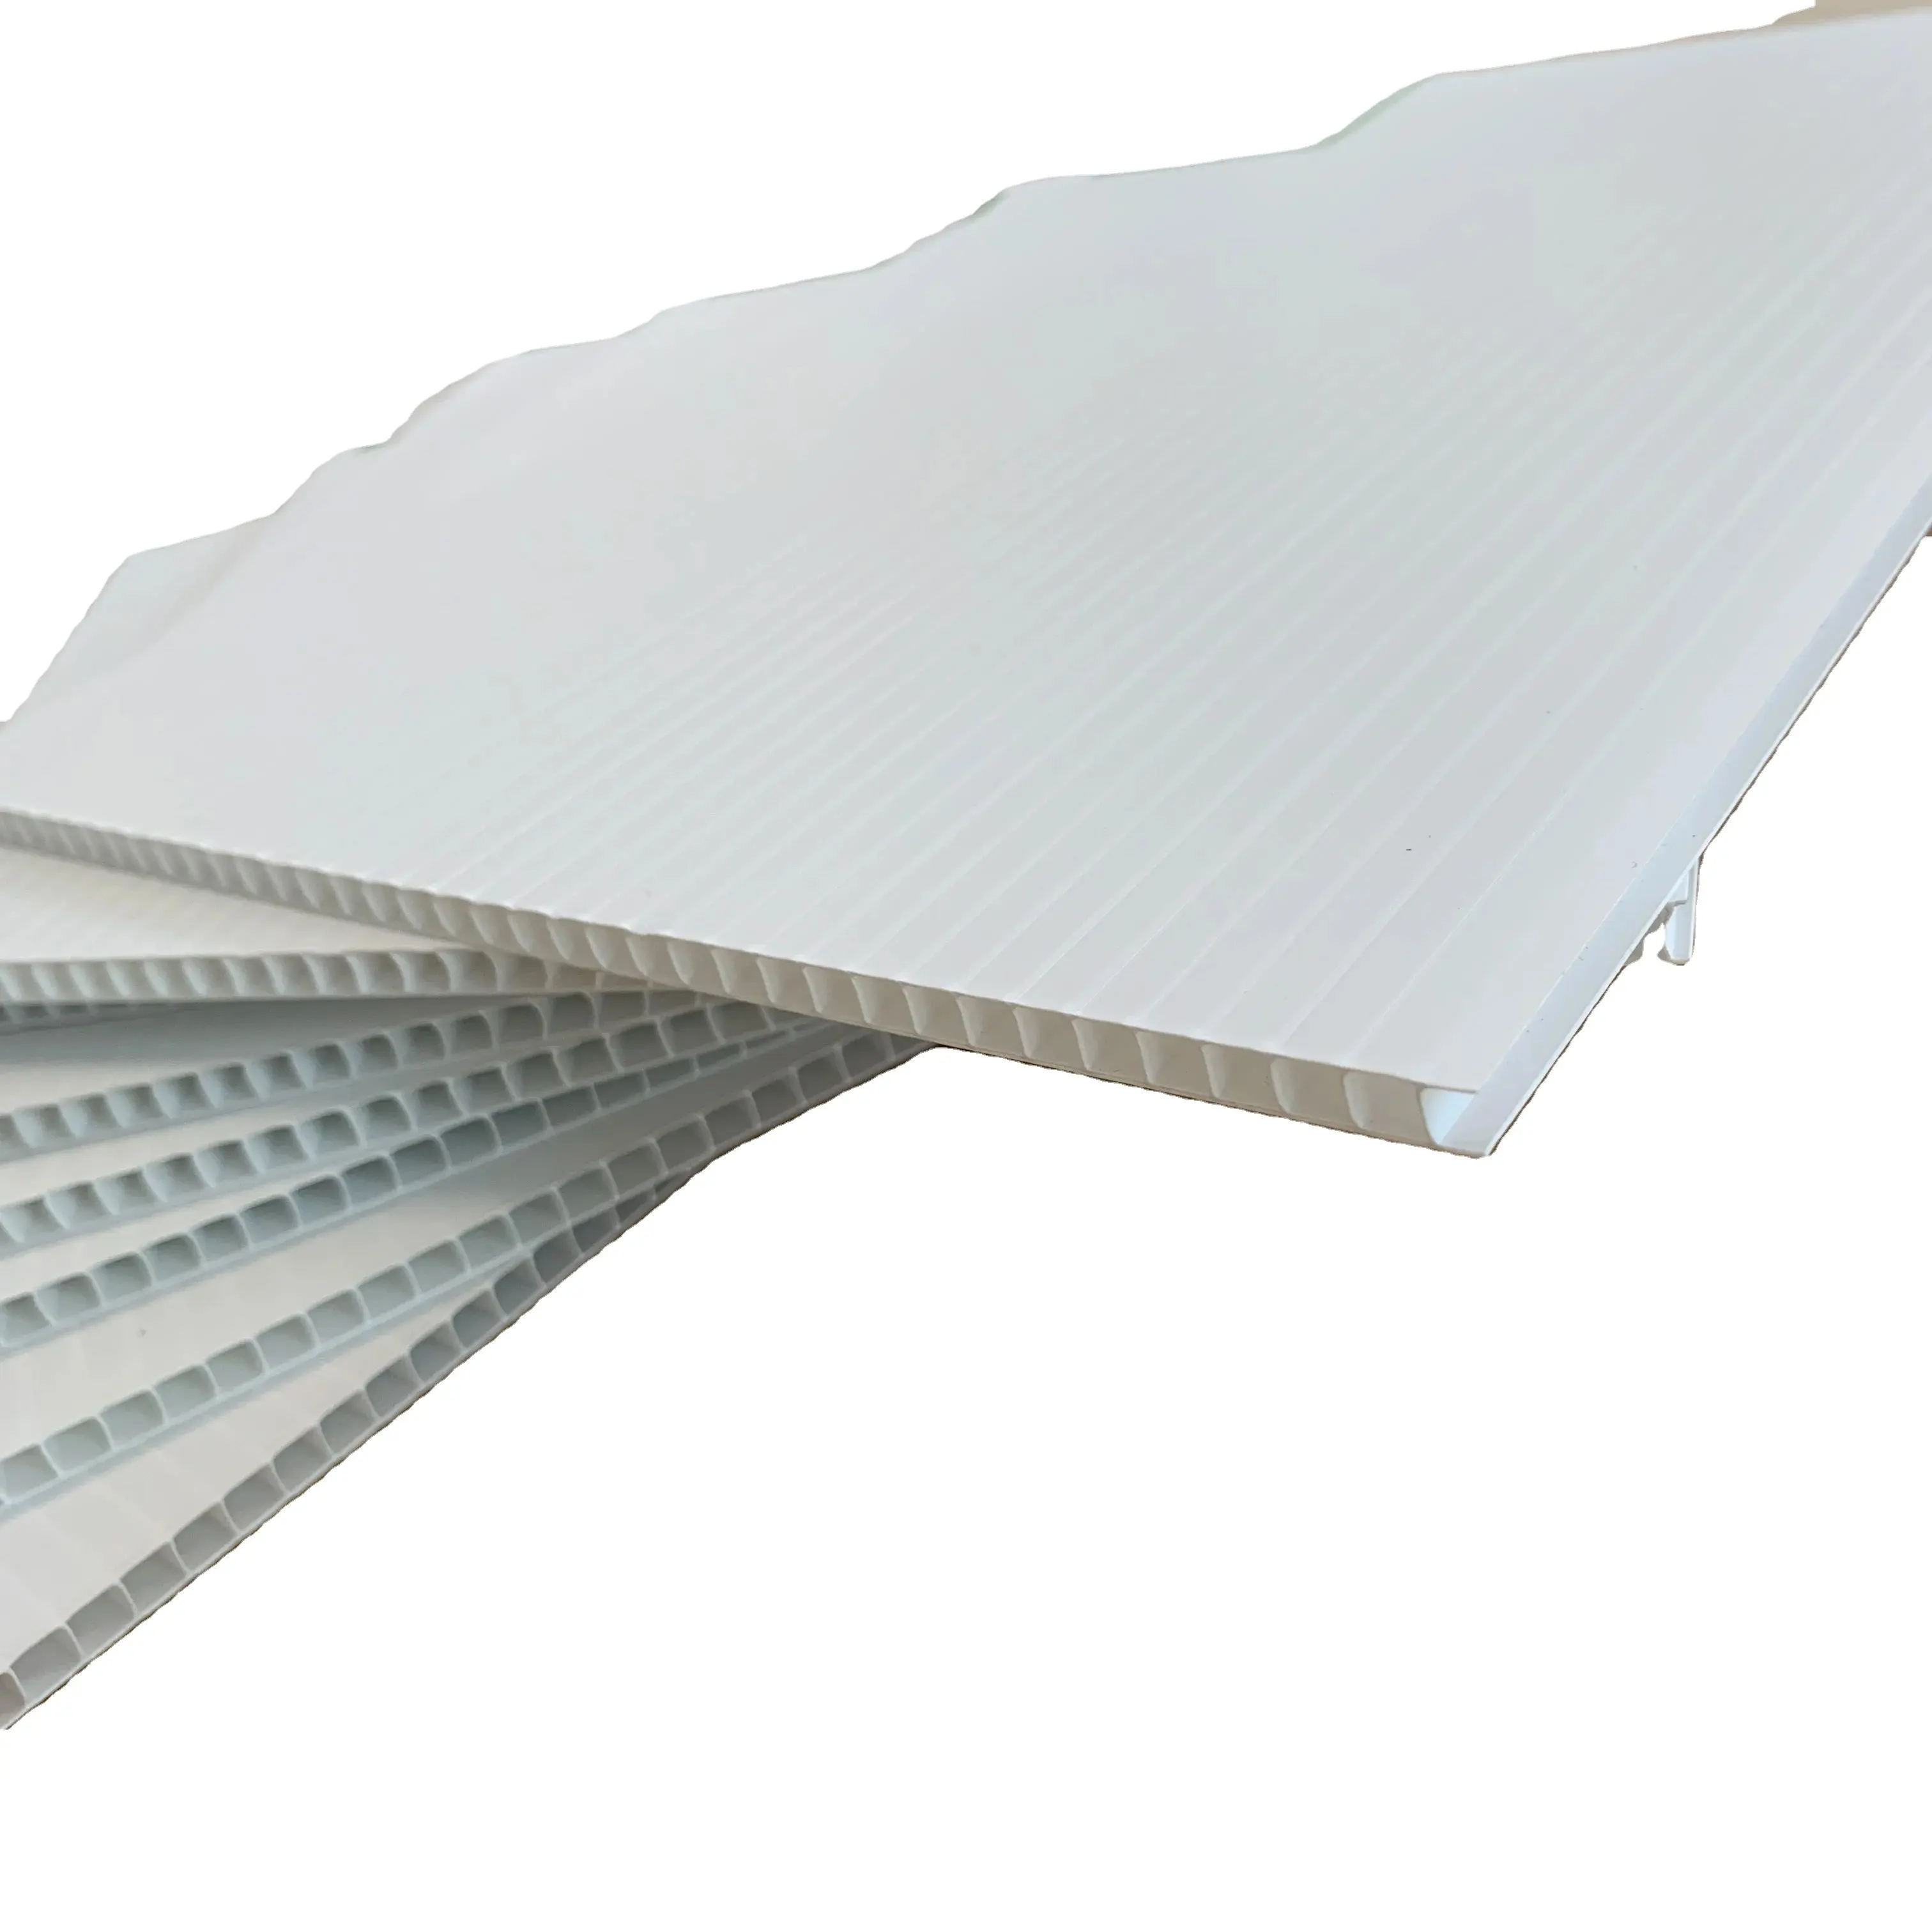 Reciclado blanco ondulado de plástico corrugado Roofing hojas 4x8 núcleo de nido de abeja Panel tablero hueco de PP